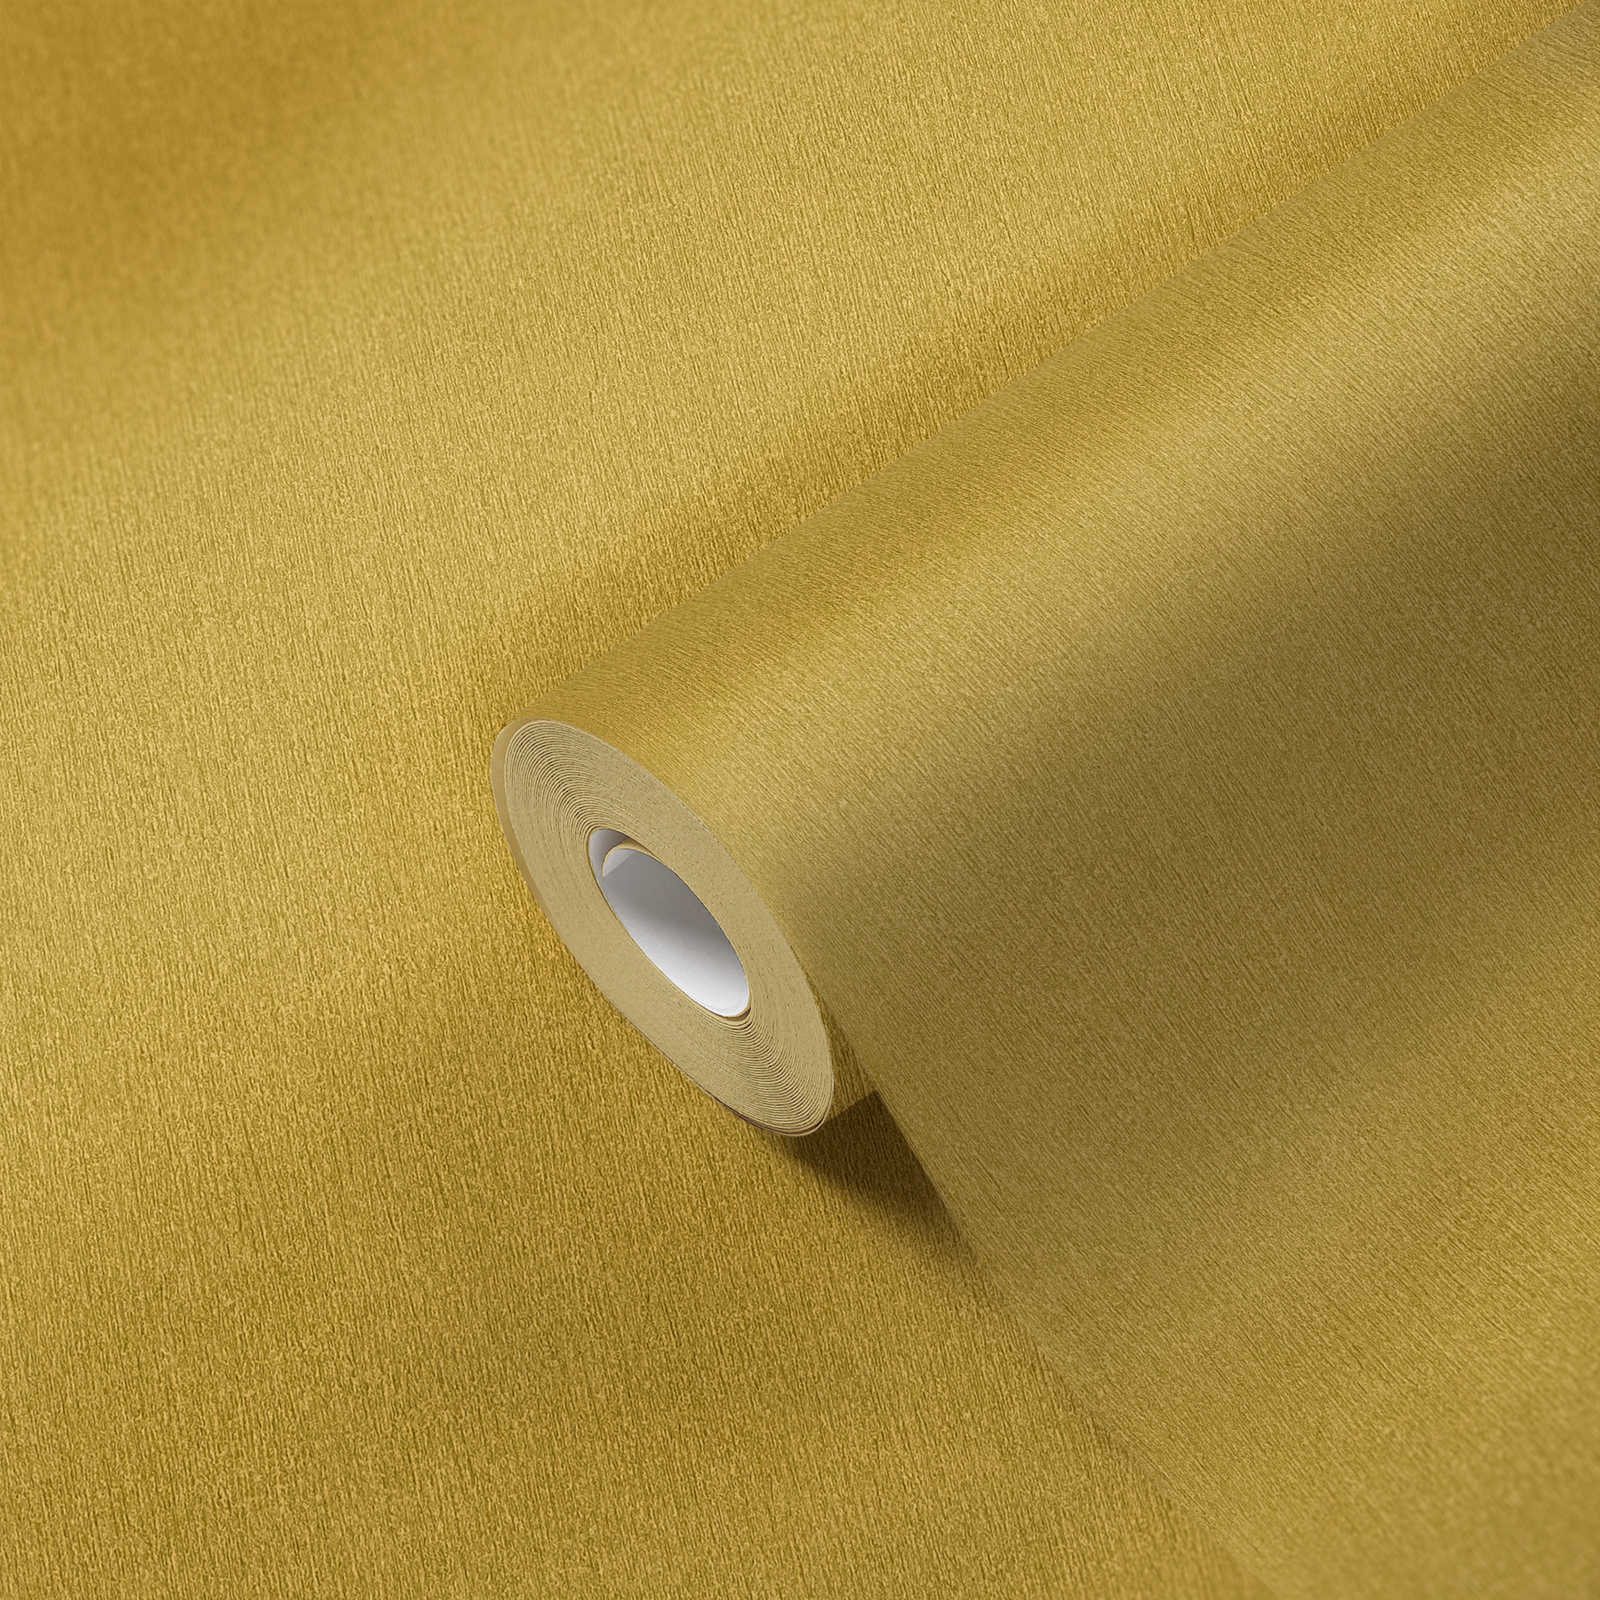             Papier peint jaune uni avec structure de couleur, lisse & satiné
        